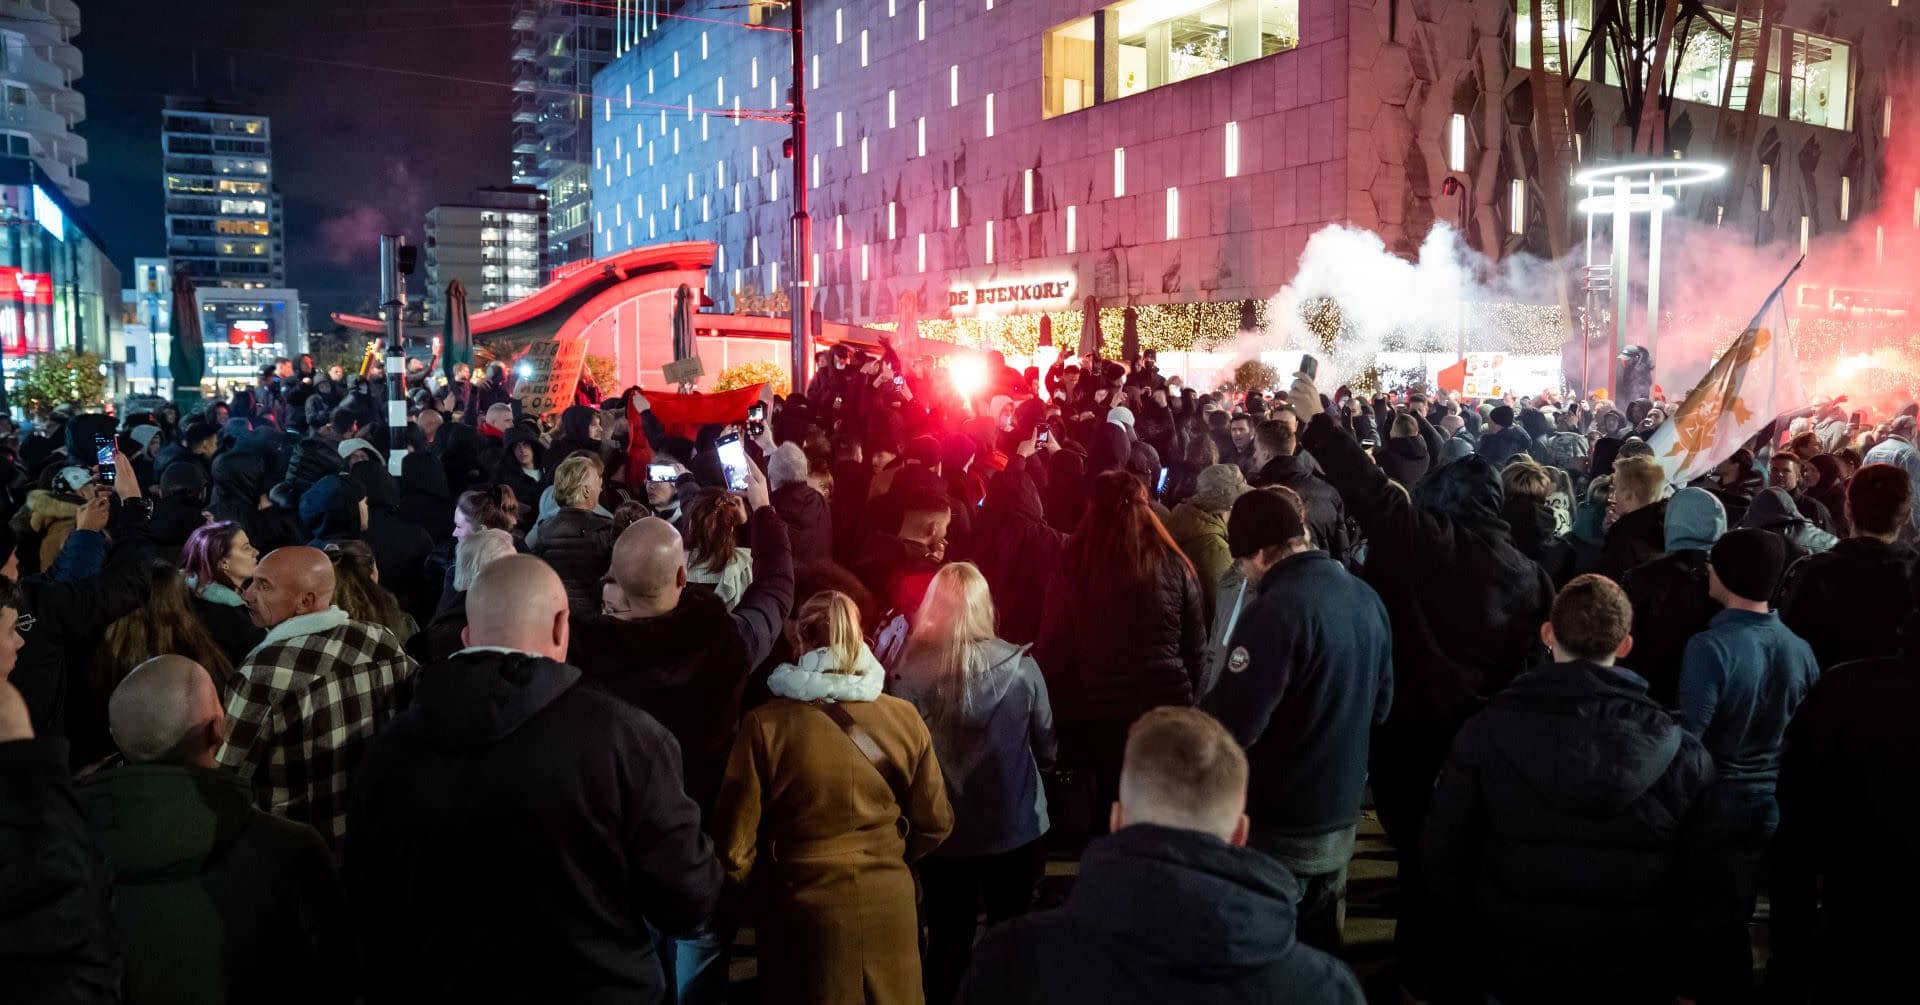 Hollannissa poliisi ampui varoituslaukauksia koronarajoituksia vastustaneen mielenosoituksen muututtua mellakaksi – useita loukkaantunut, kymmeniä pidätetty